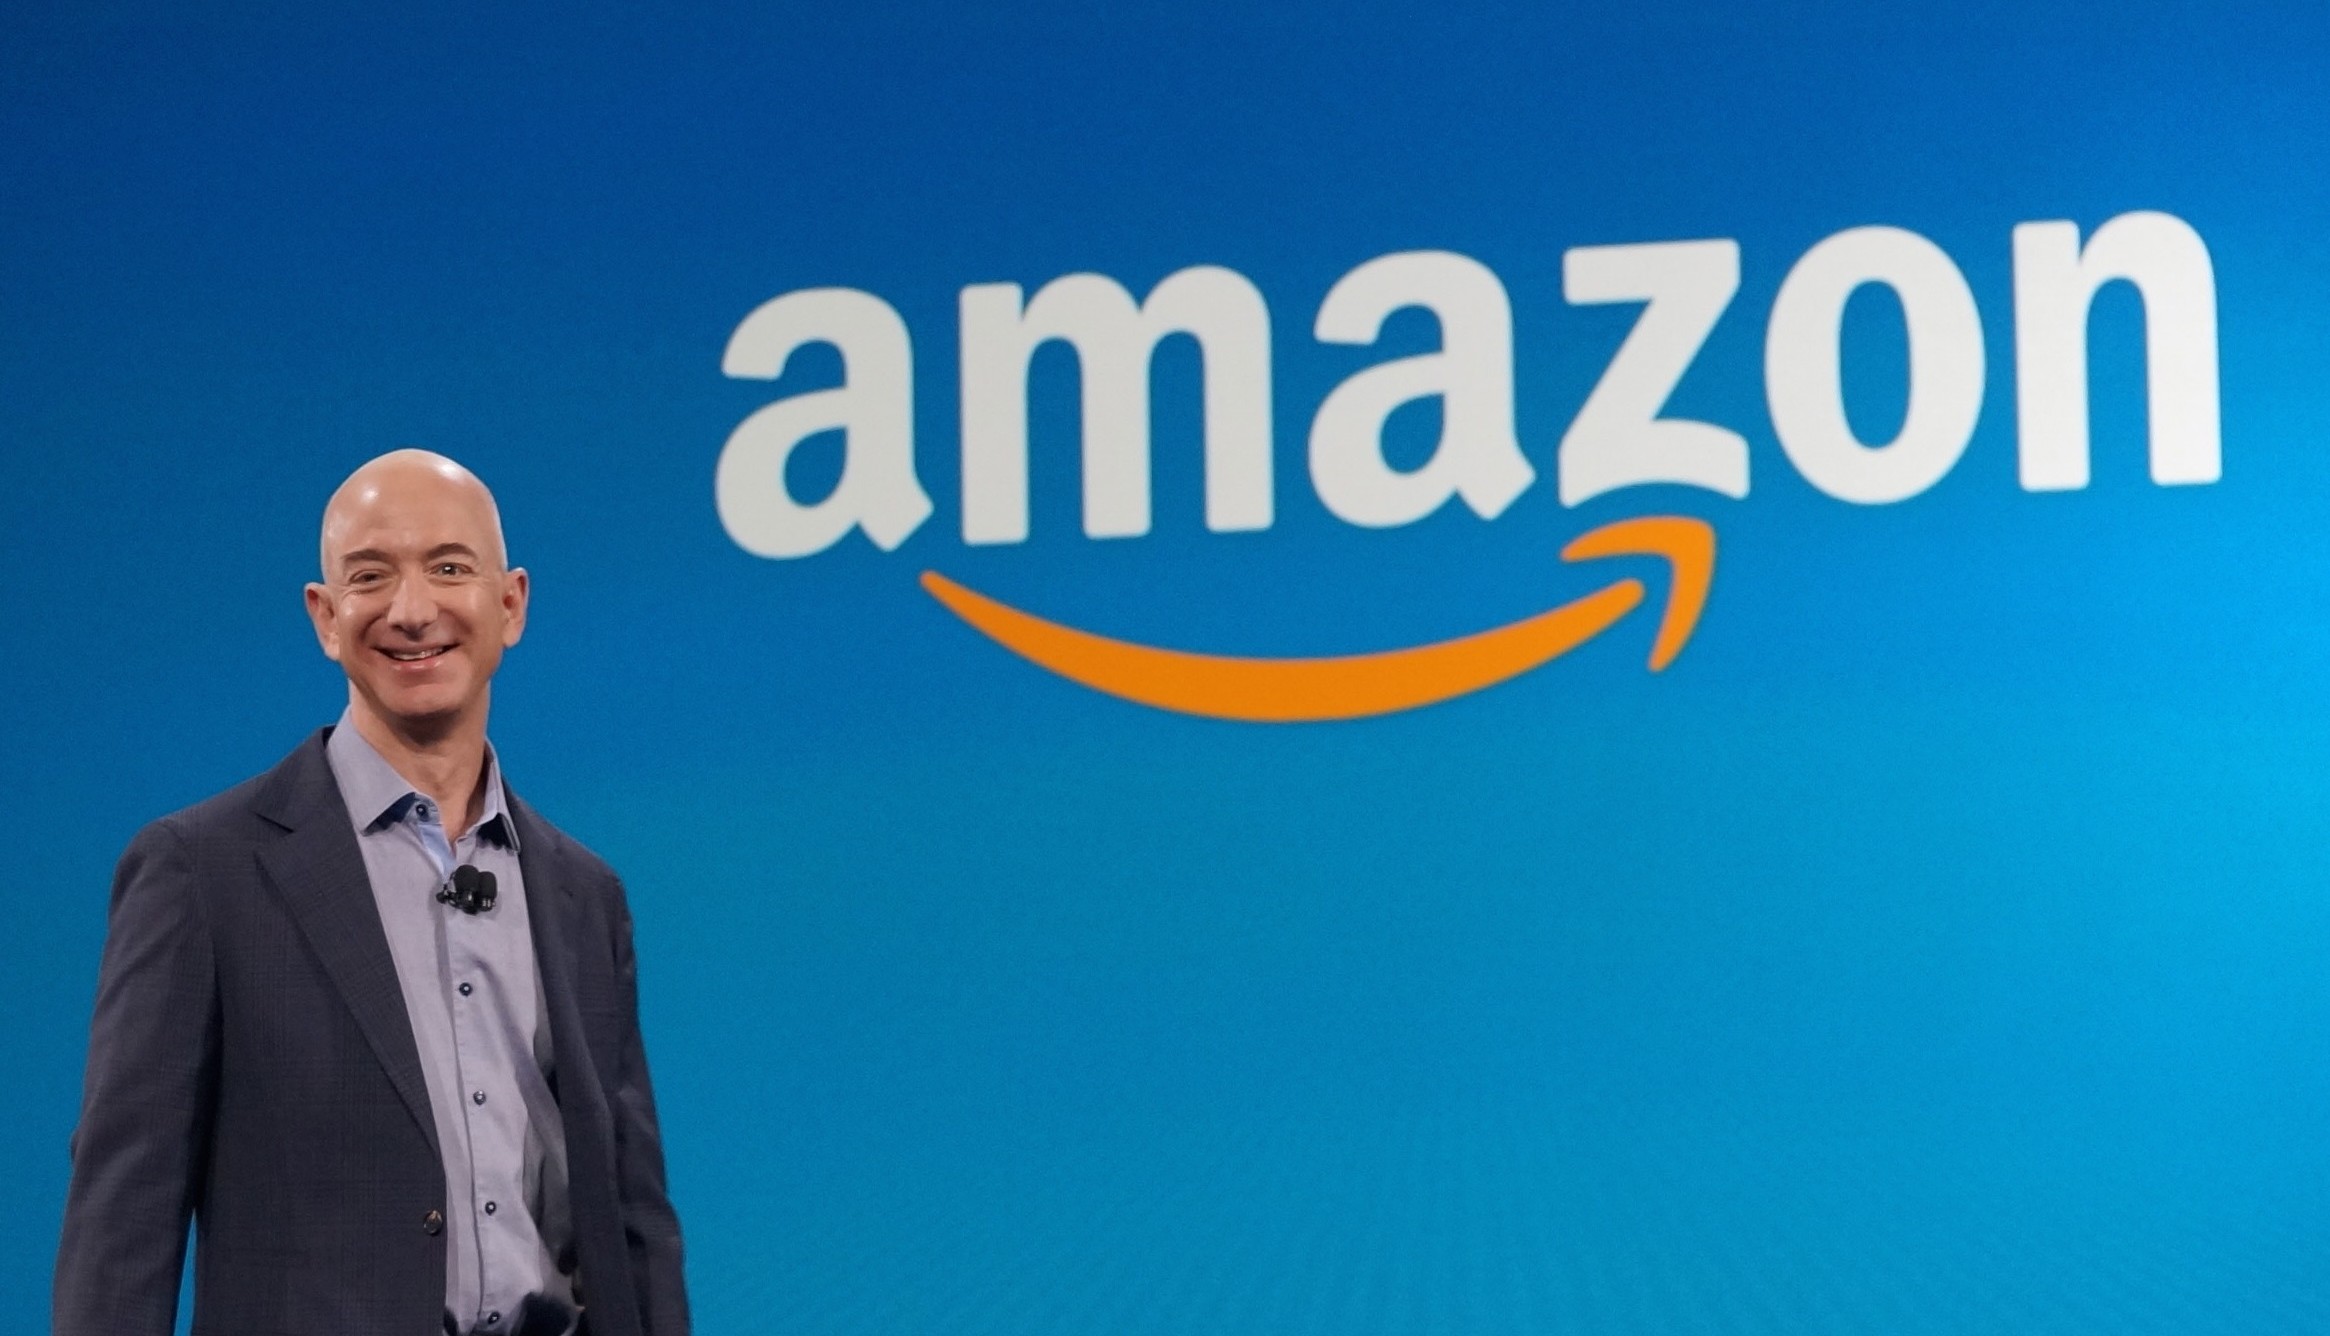 Il fondatore di Amazon, Jeff Bezos